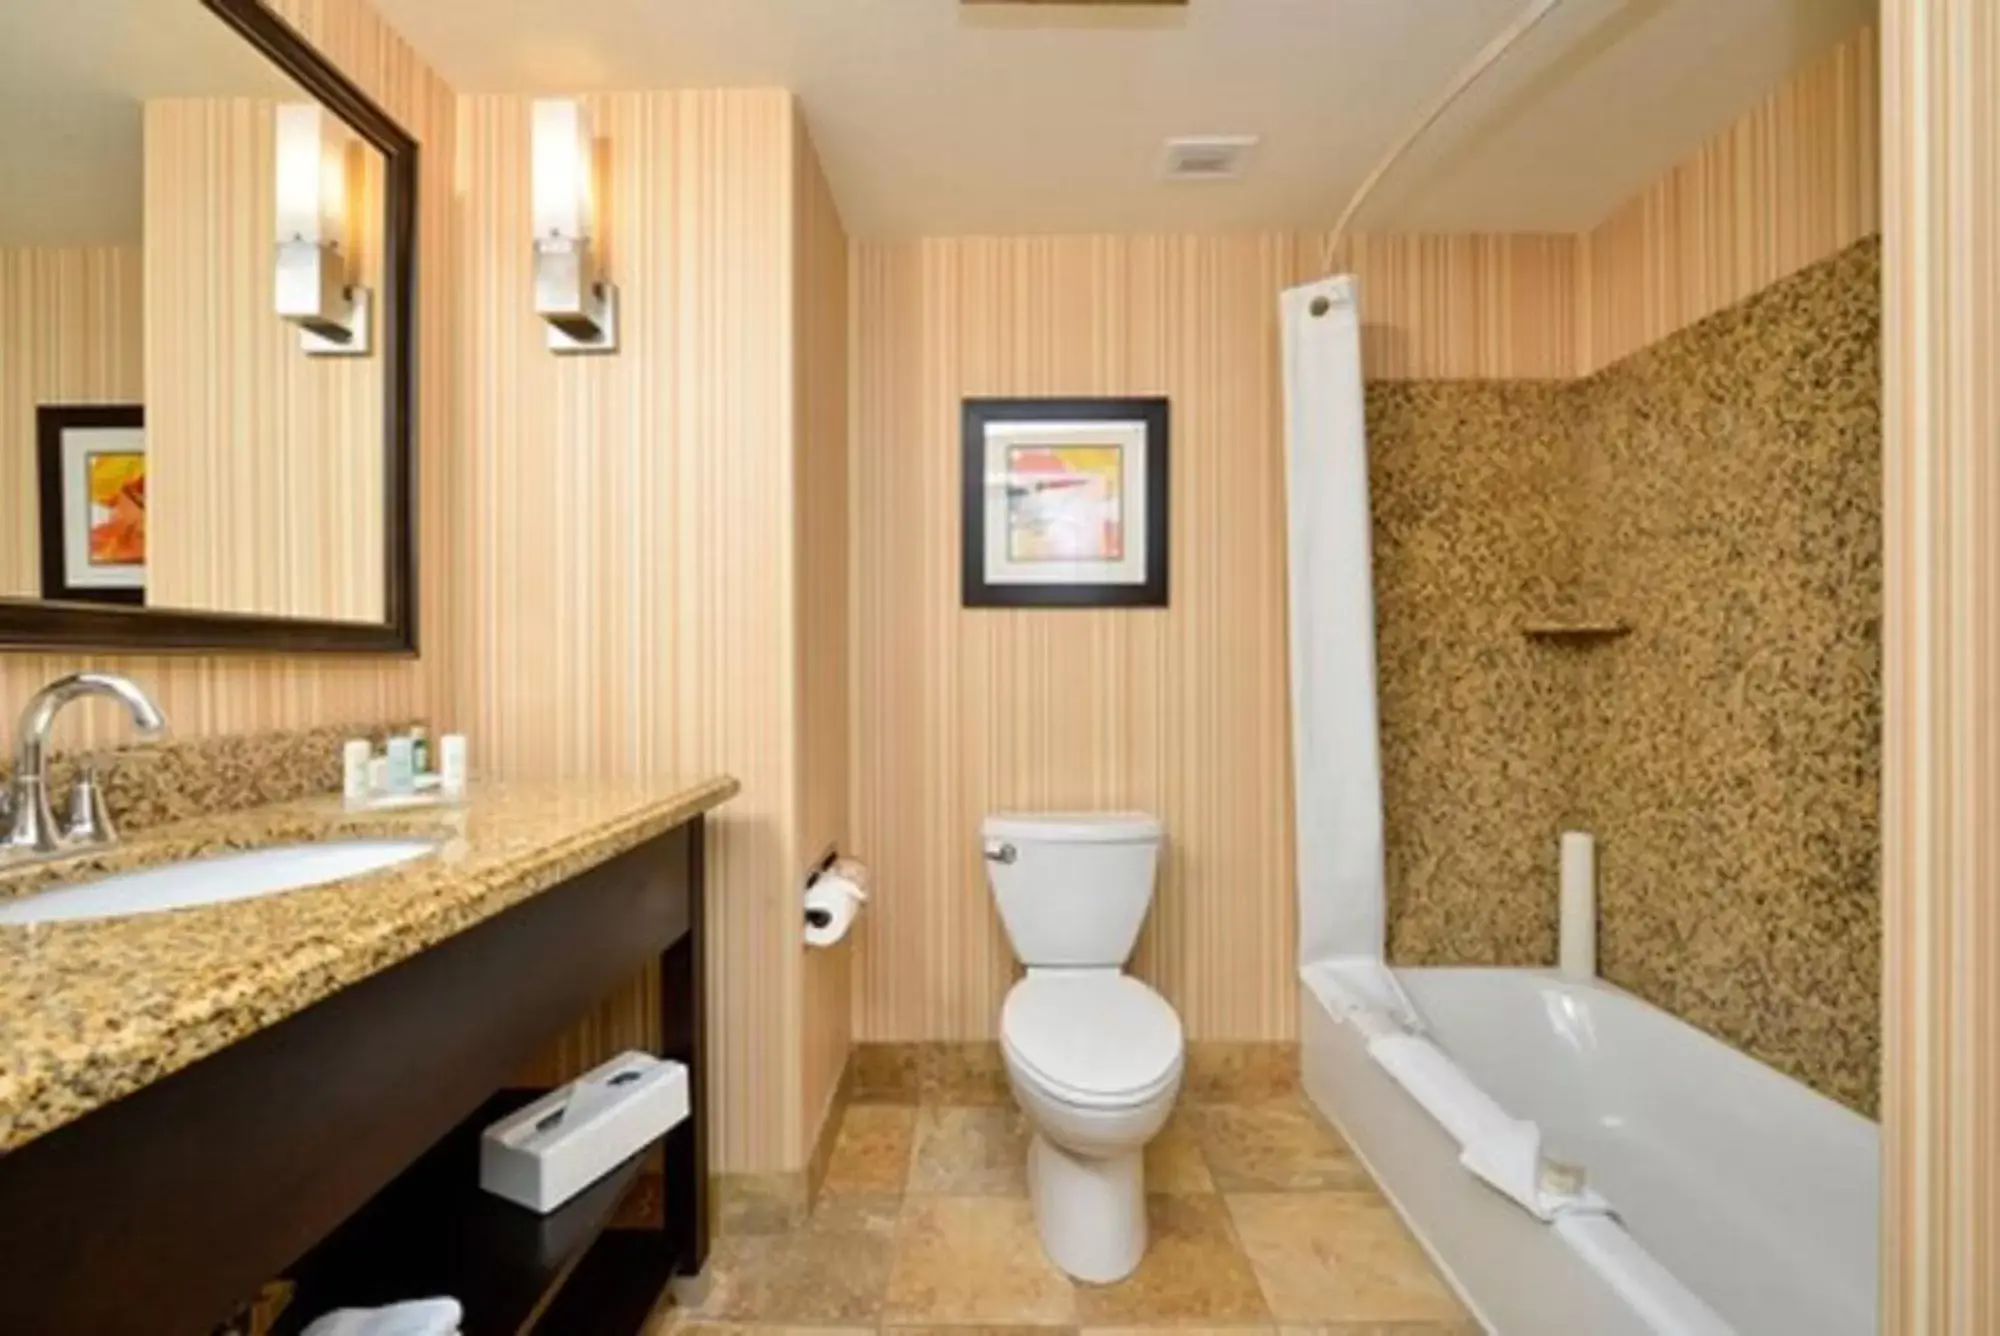 Toilet, Bathroom in Comfort Suites